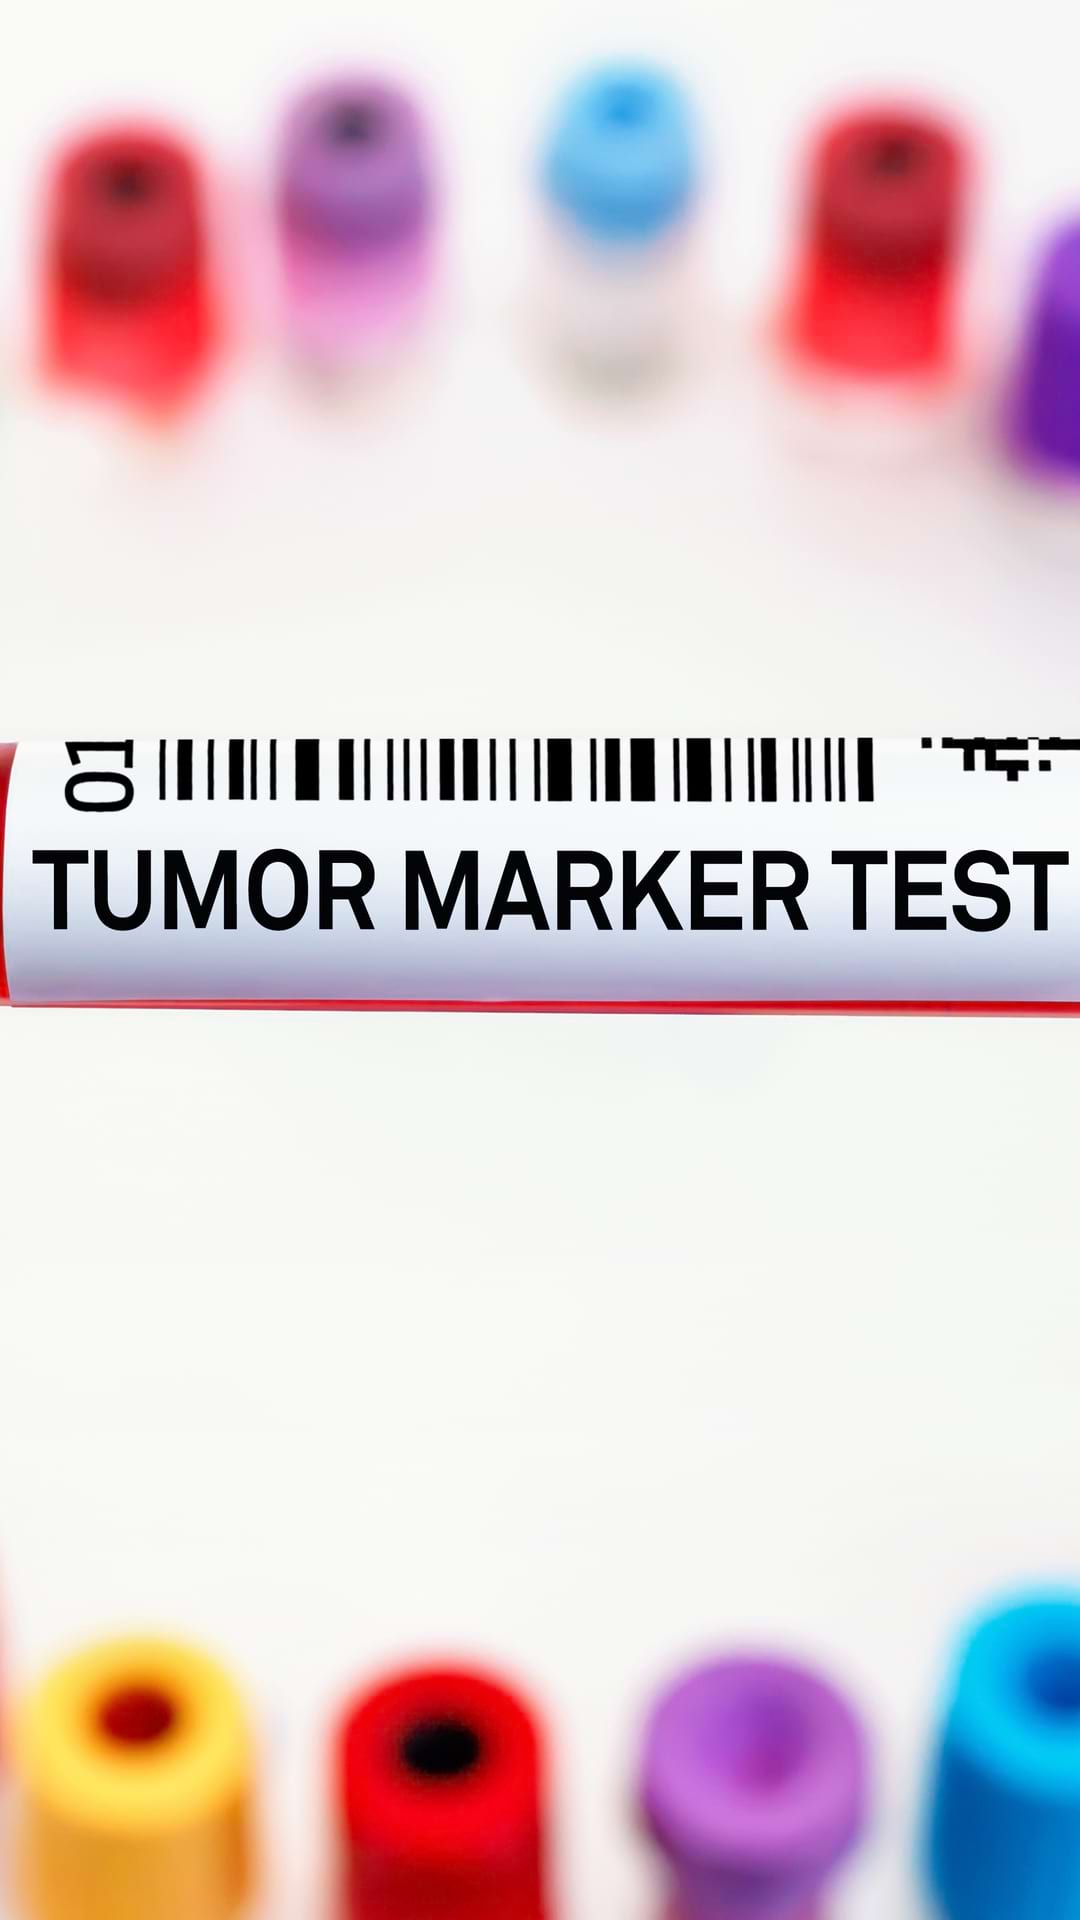 Cat de utili sunt tumorali?